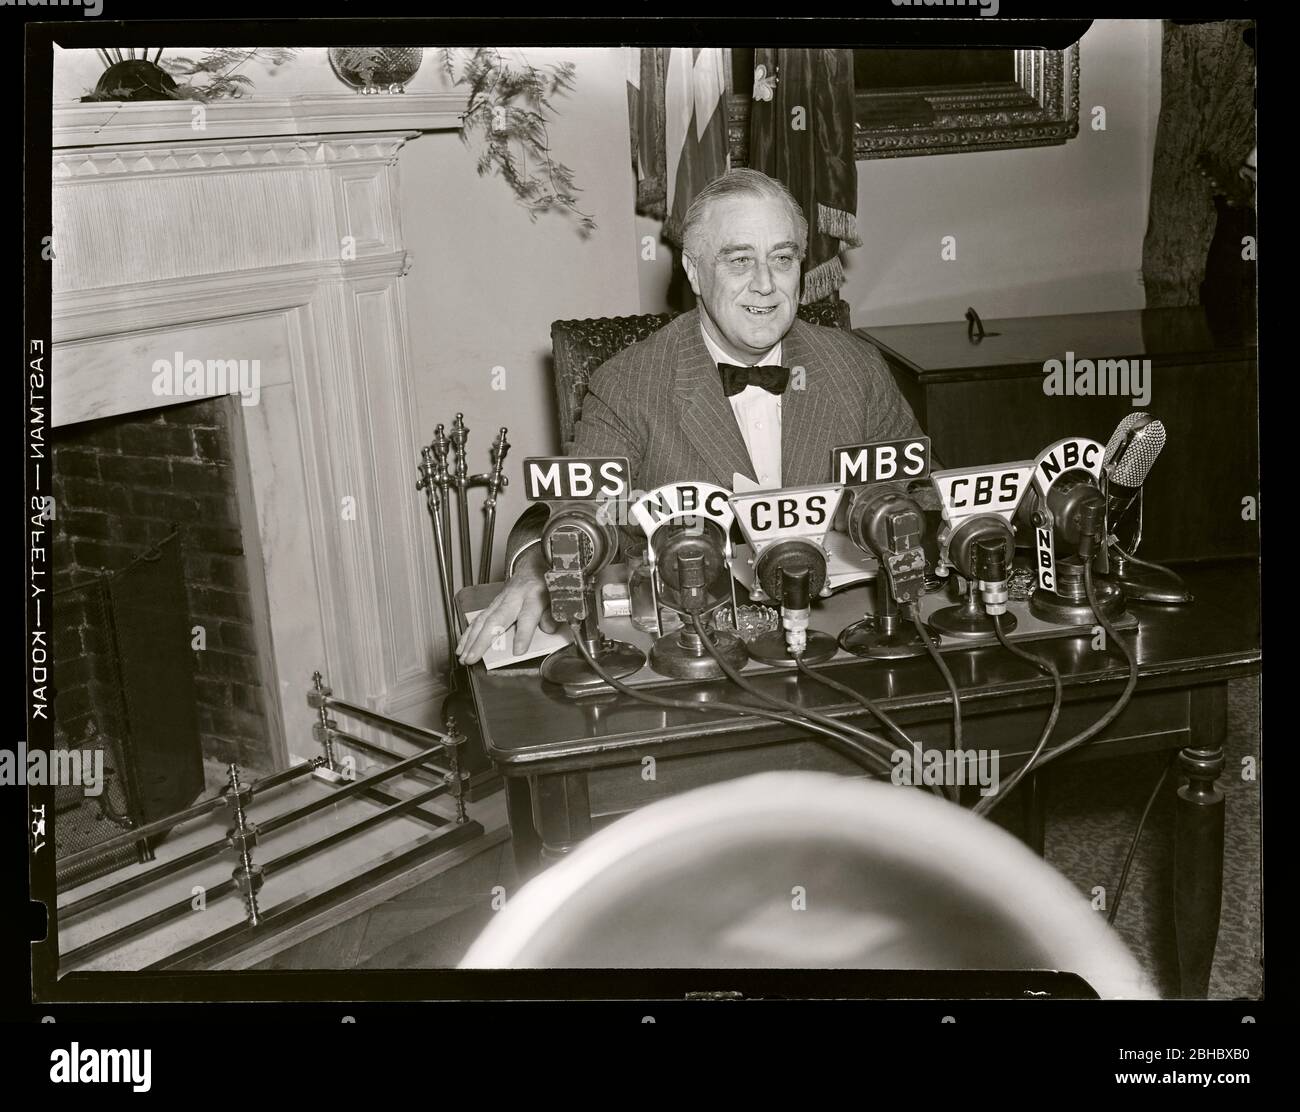 Il presidente Franklin D. Roosevelt 'FDR' sorride prima di dare un indirizzo radio due giorni dopo l'attacco a Pearl Harbor, 1941. Immagine da 4x5 pollici negativo. Foto Stock